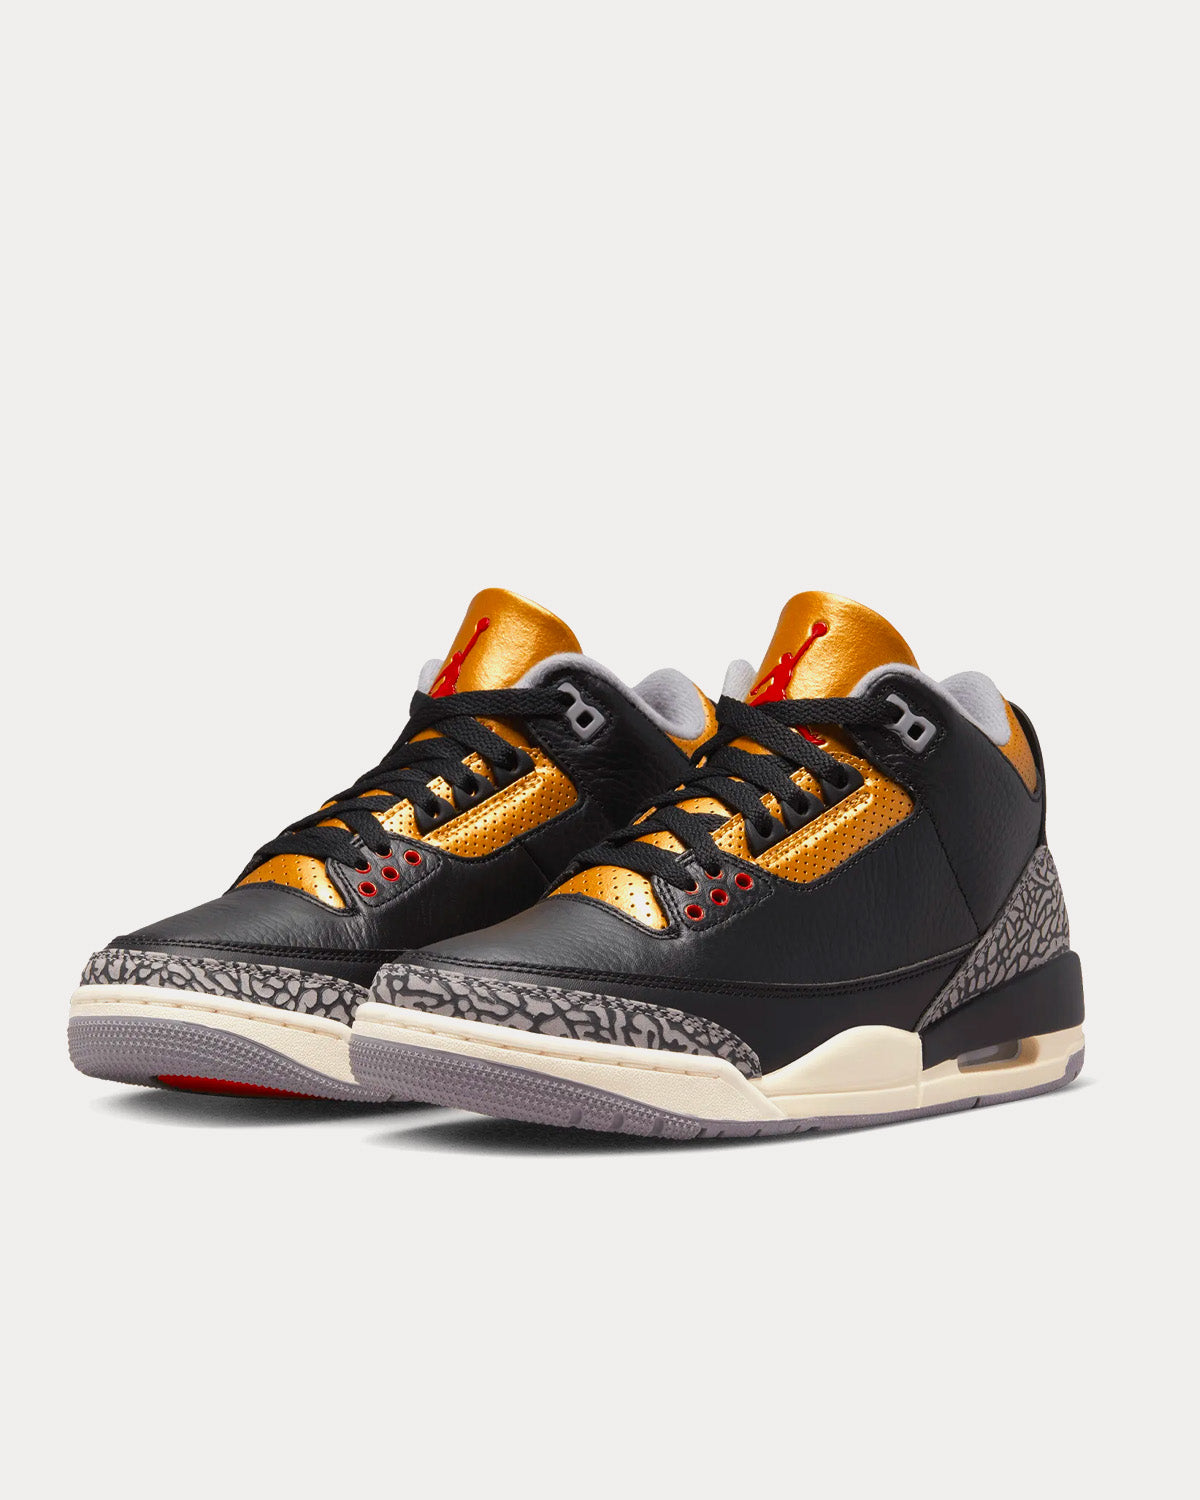 Jordan - Air Jordan 3 Retro 'Black Cement Gold' High Top Sneakers